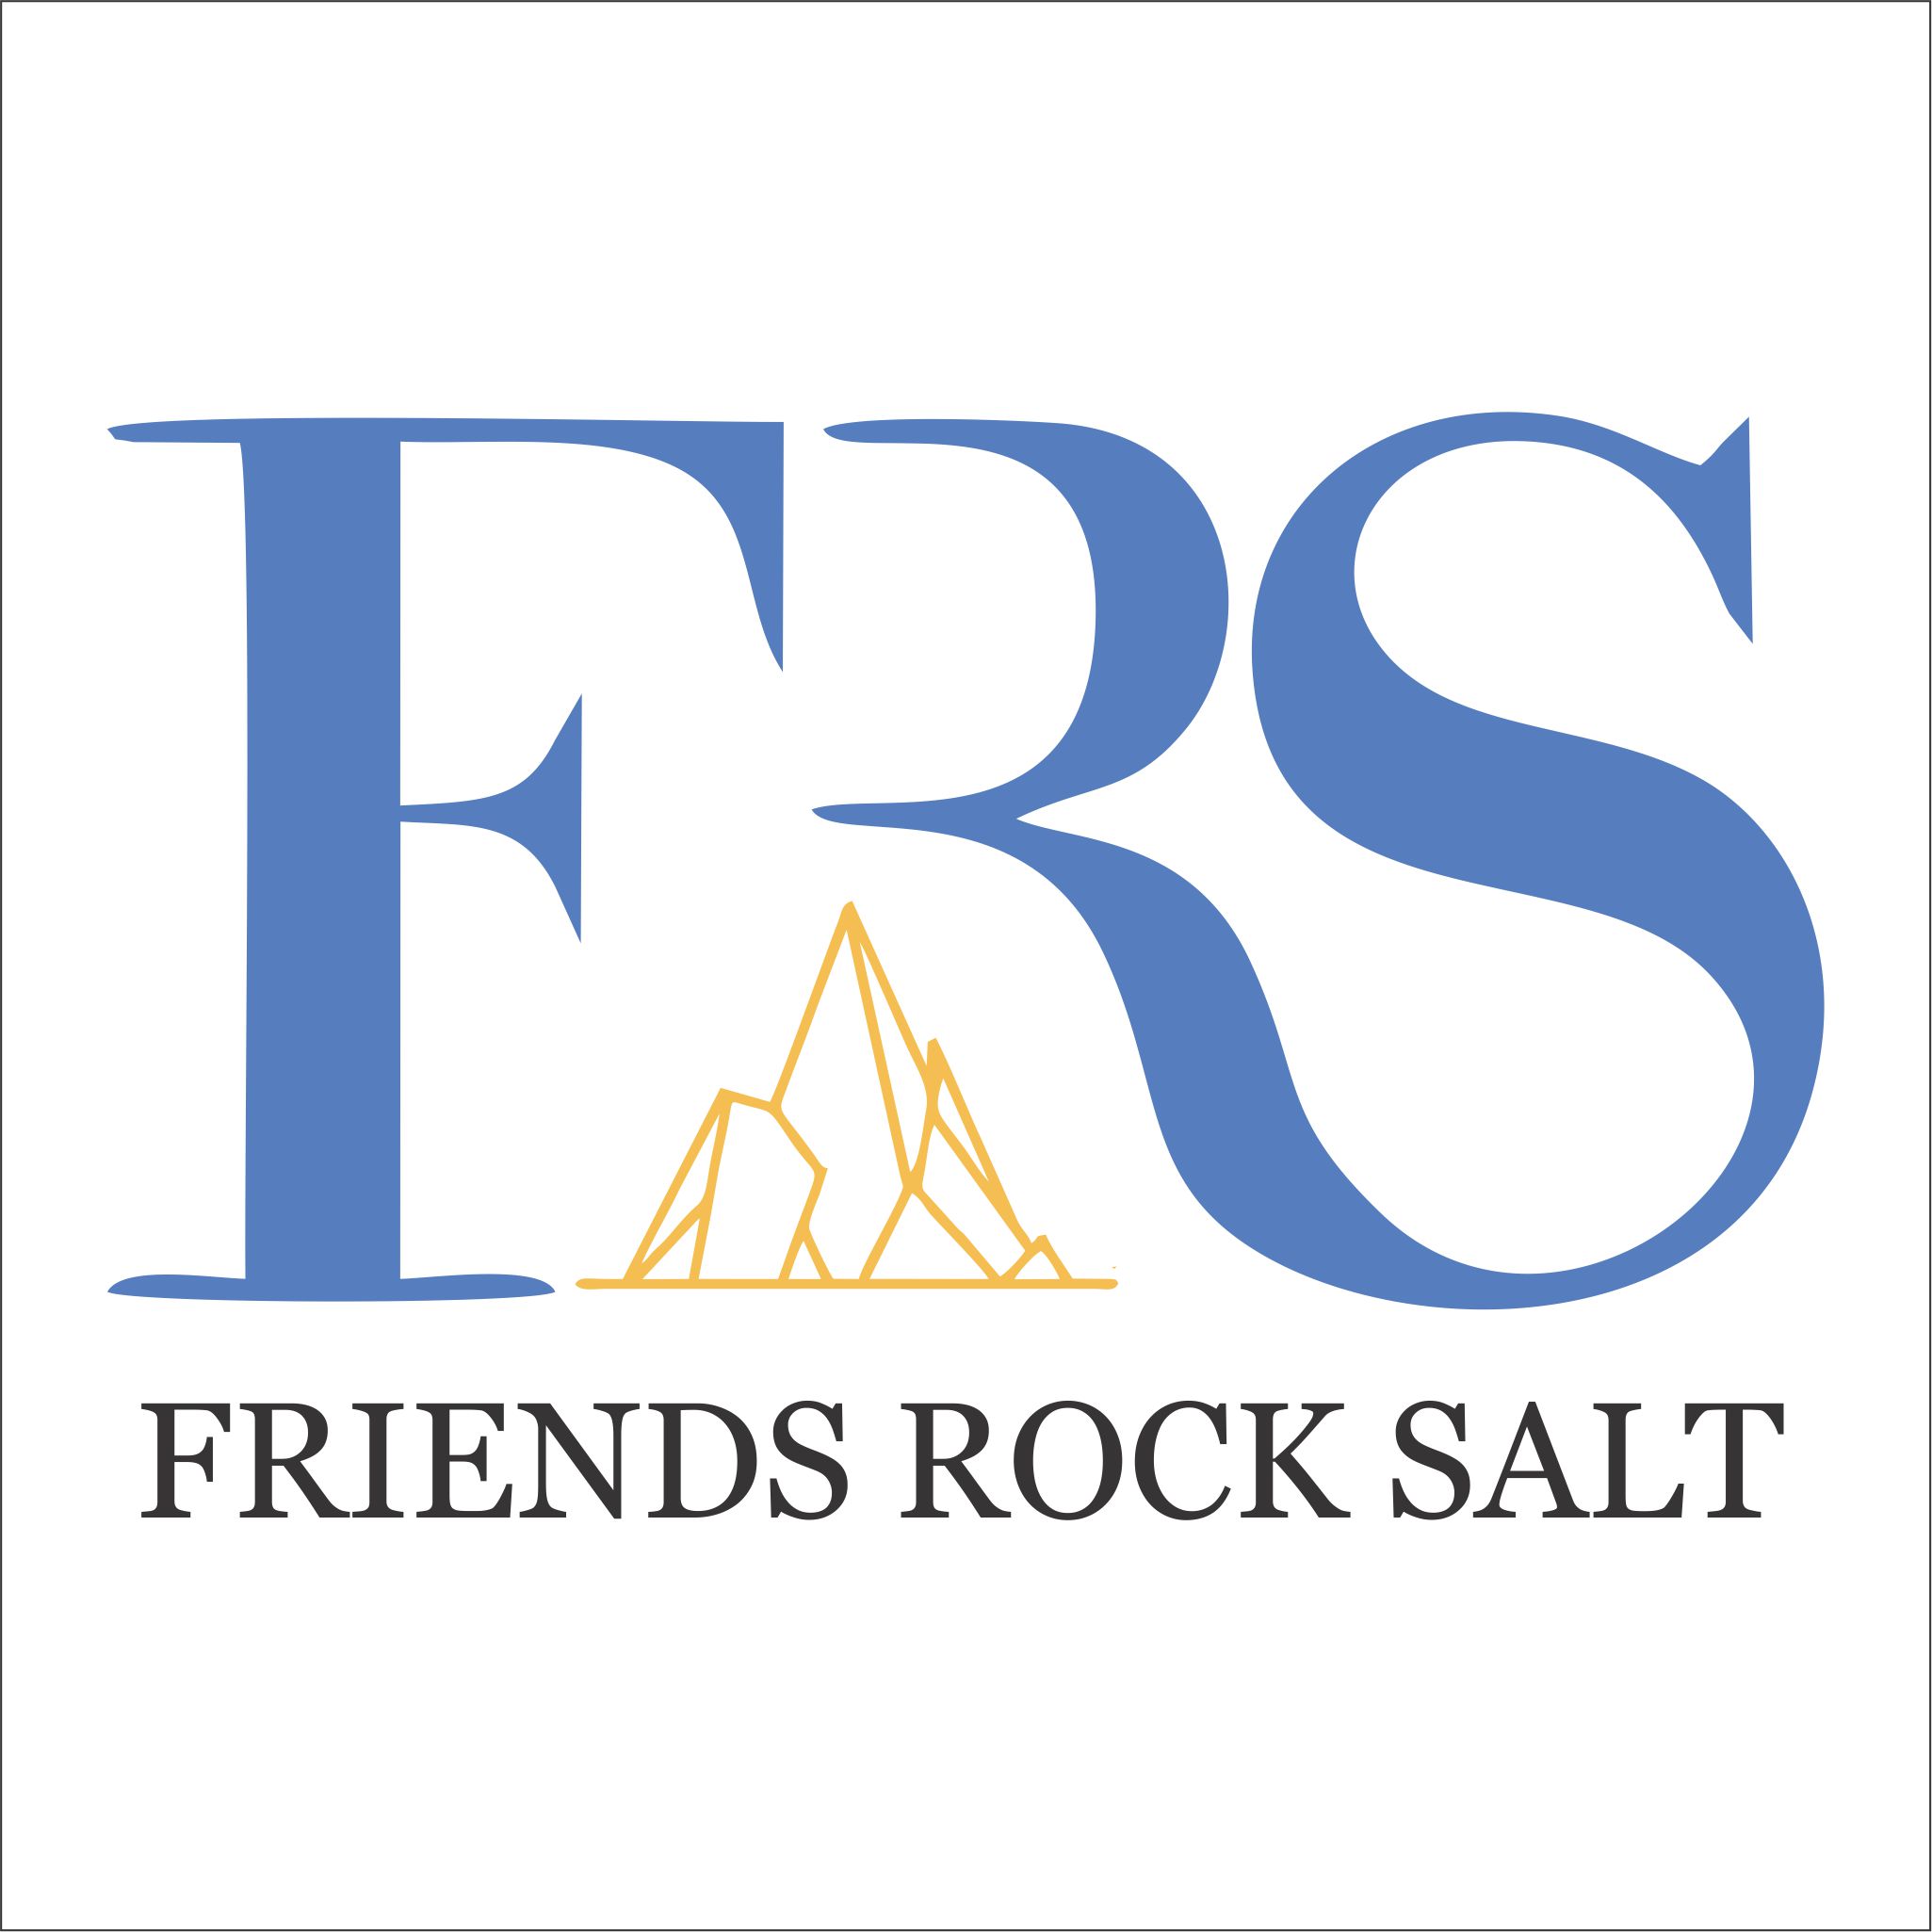 Friends rock salt